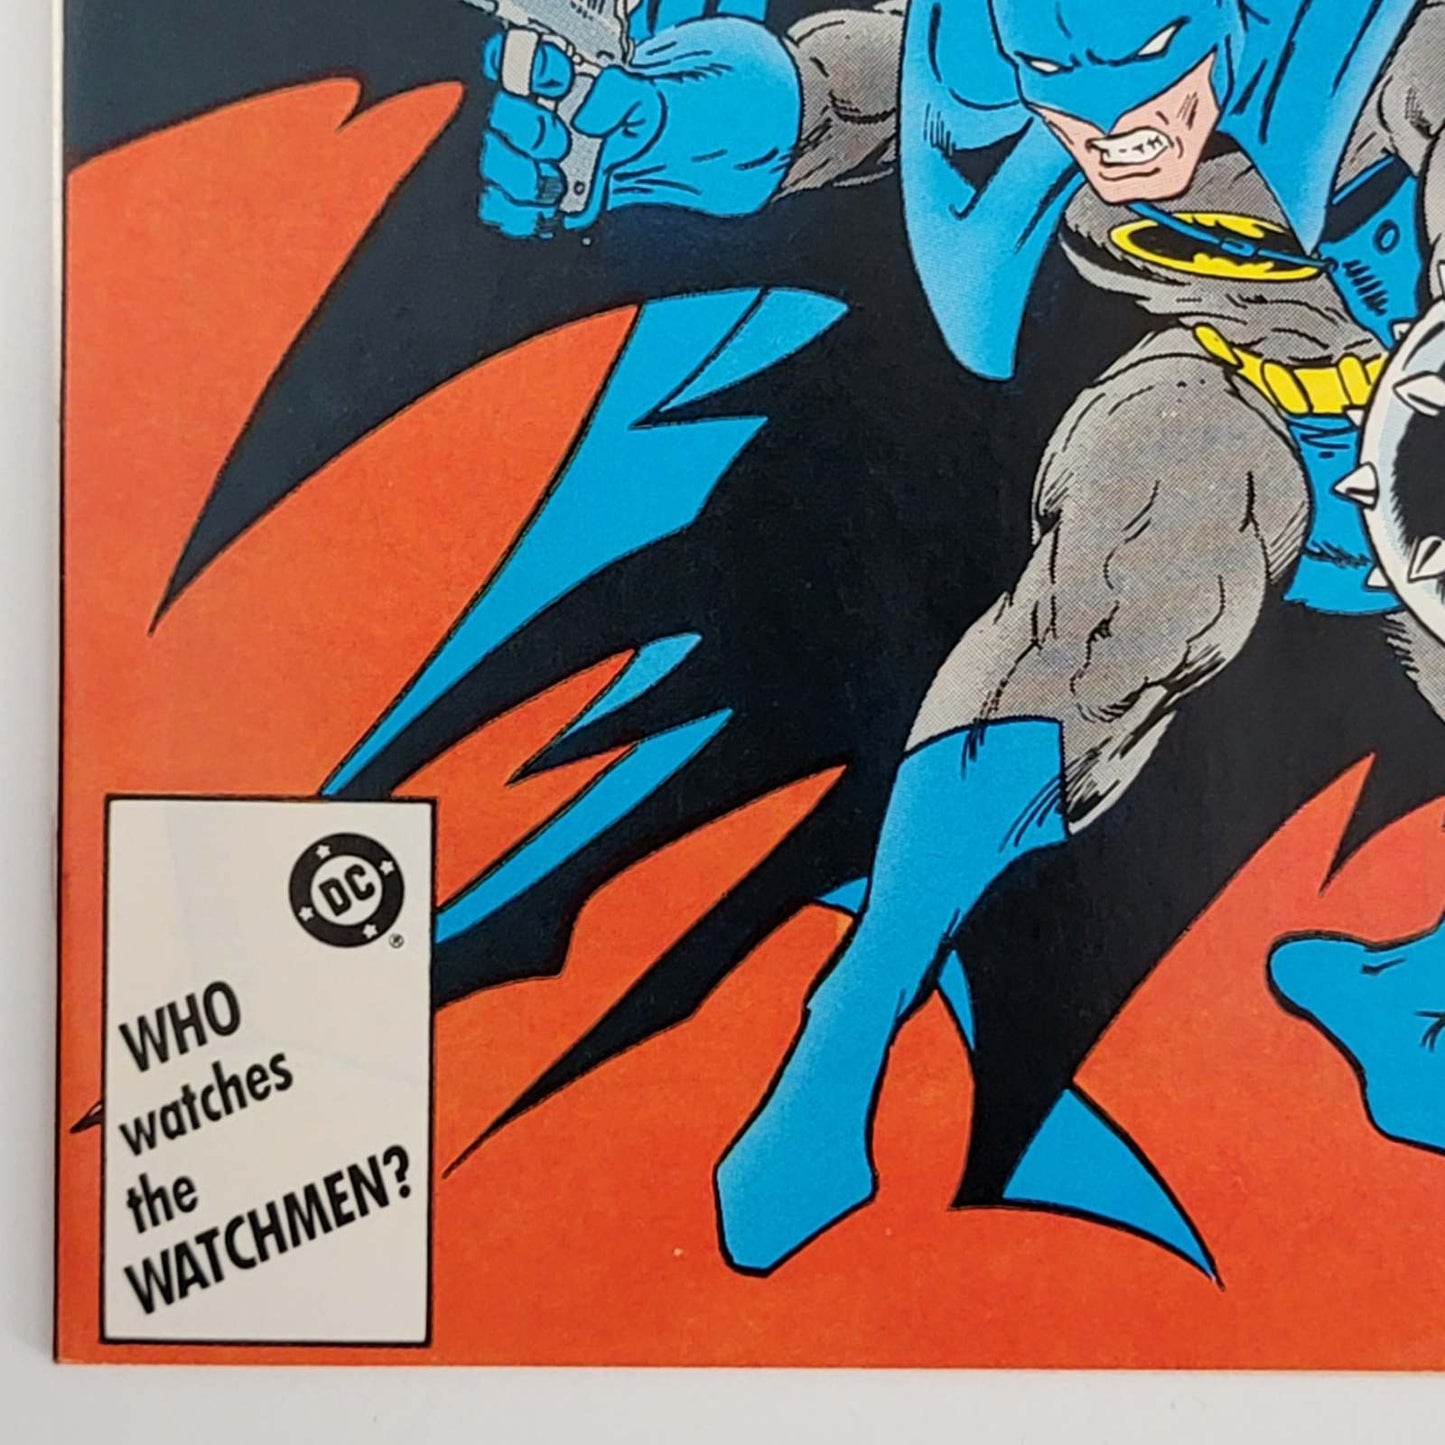 Detective Comics Vol 1 #0578